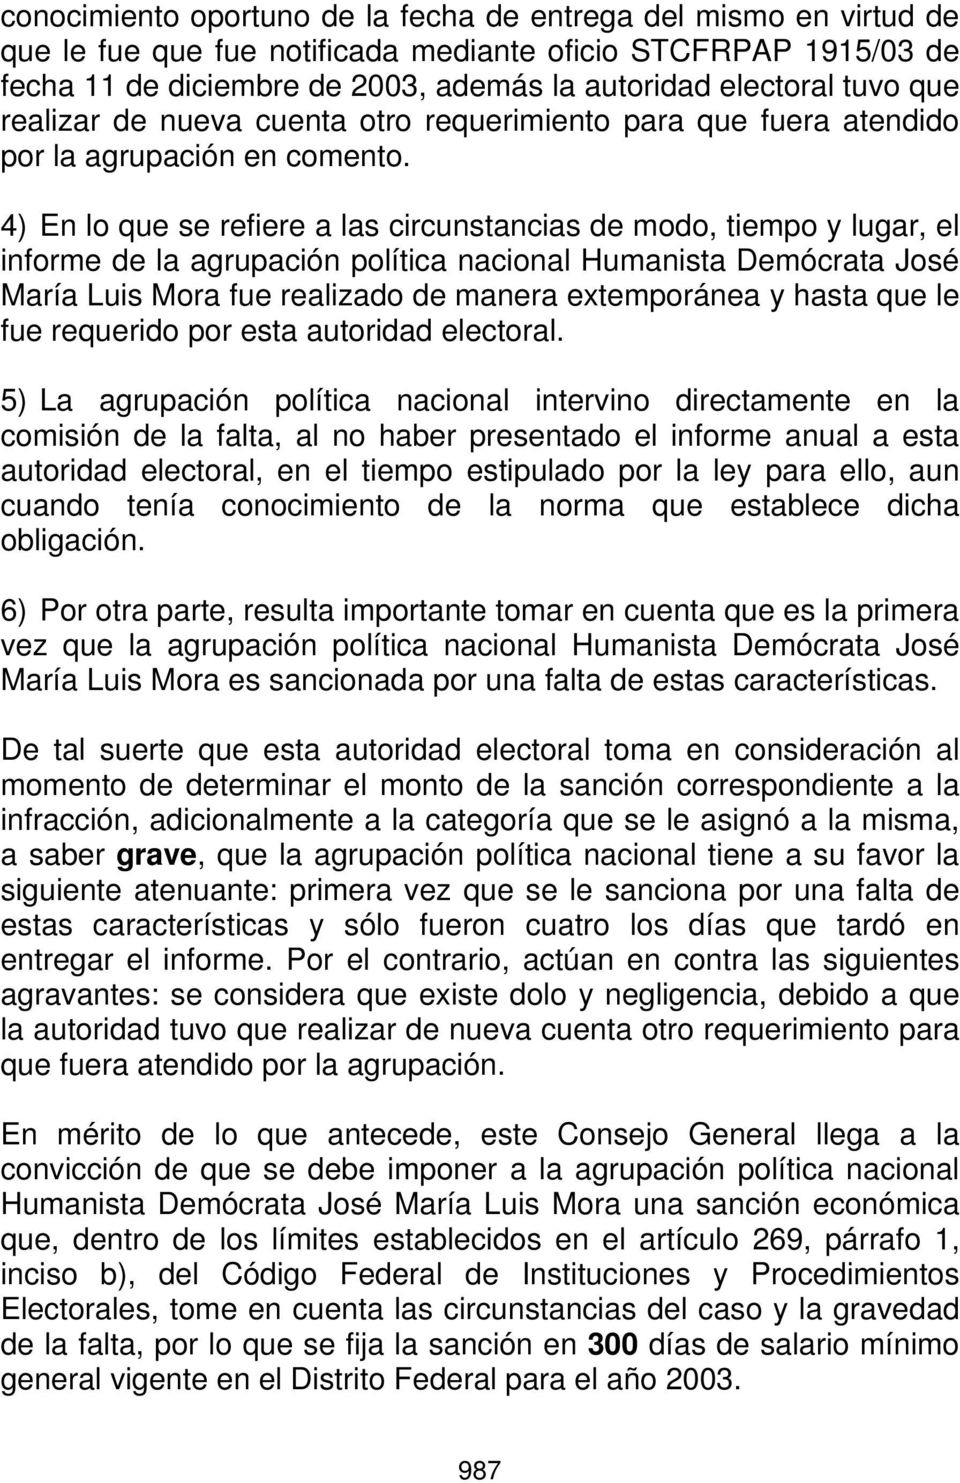 4) En lo que se refiere a las circunstancias de modo, tiempo y lugar, el informe de la agrupación política nacional Humanista Demócrata José María Luis Mora fue realizado de manera extemporánea y